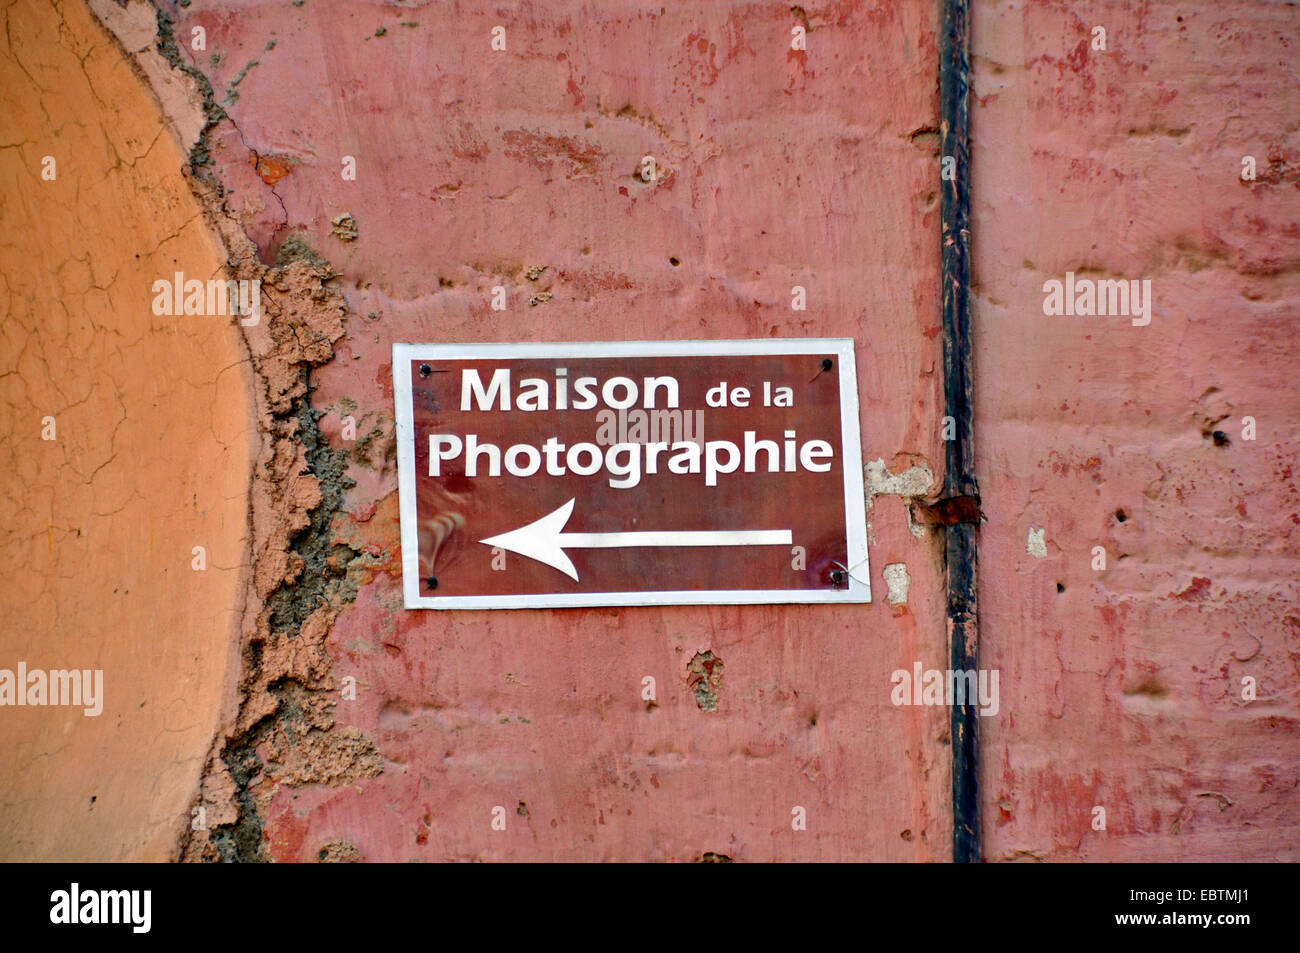 sign 'Maison de la Photographie', Morocco, Marrakesh Stock Photo